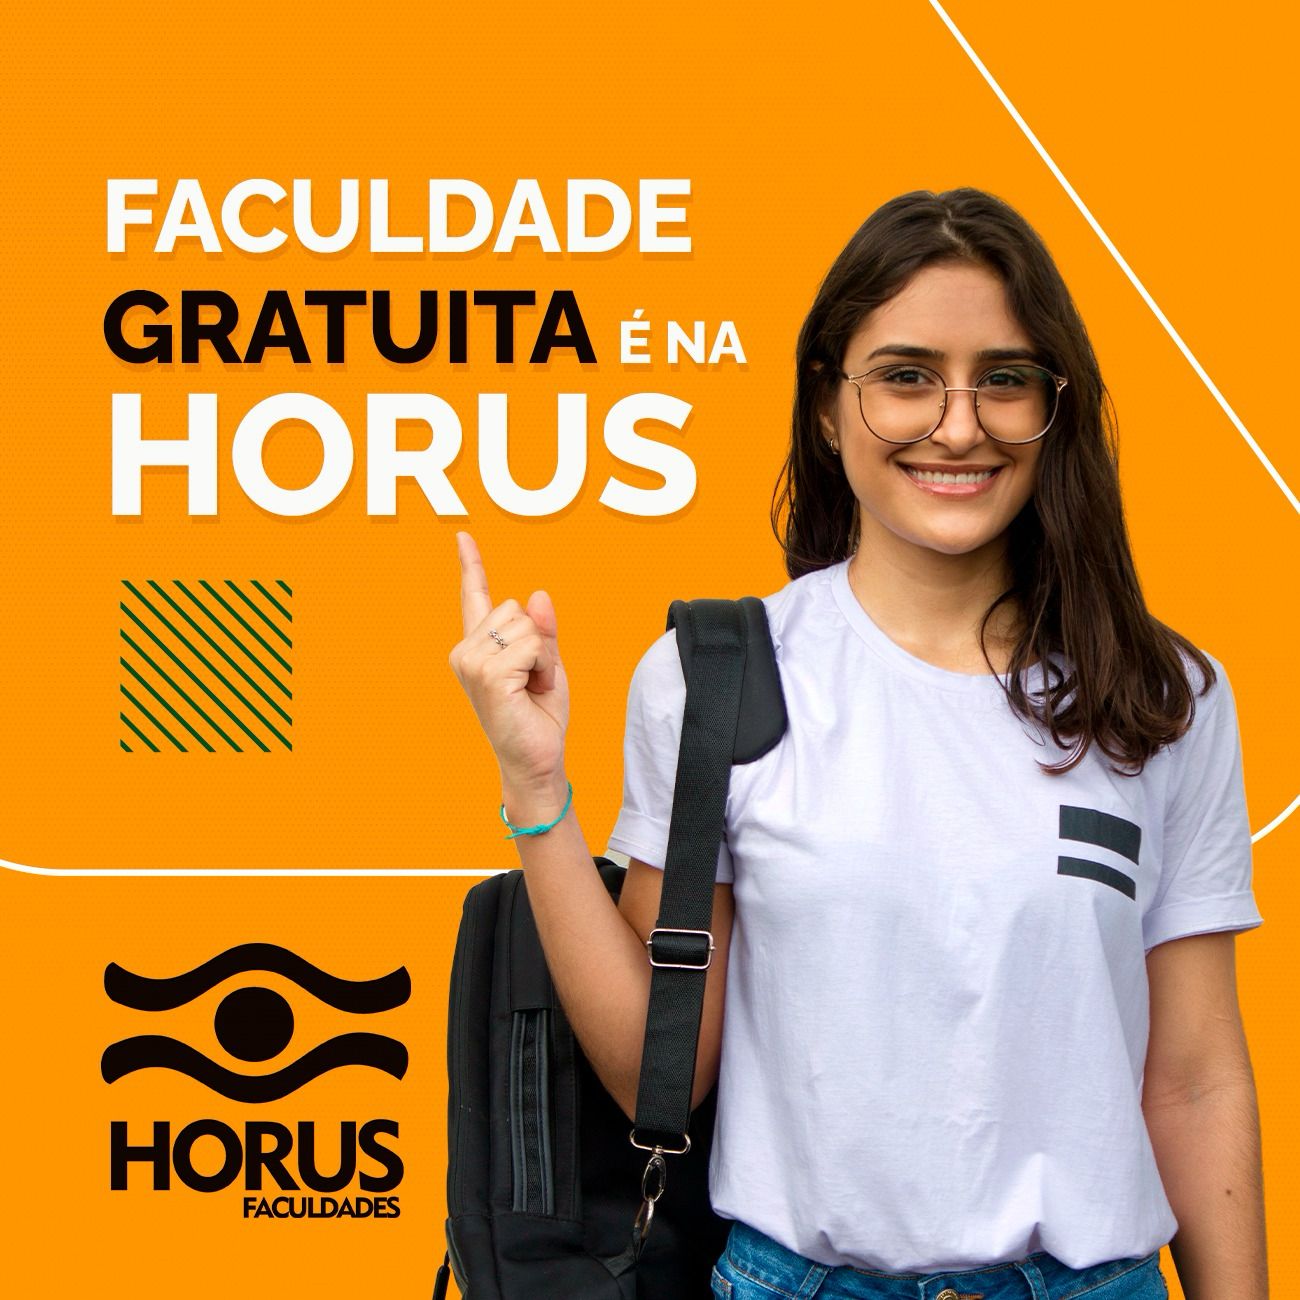 Horus Faculdades lança programa faculdade gratuita 